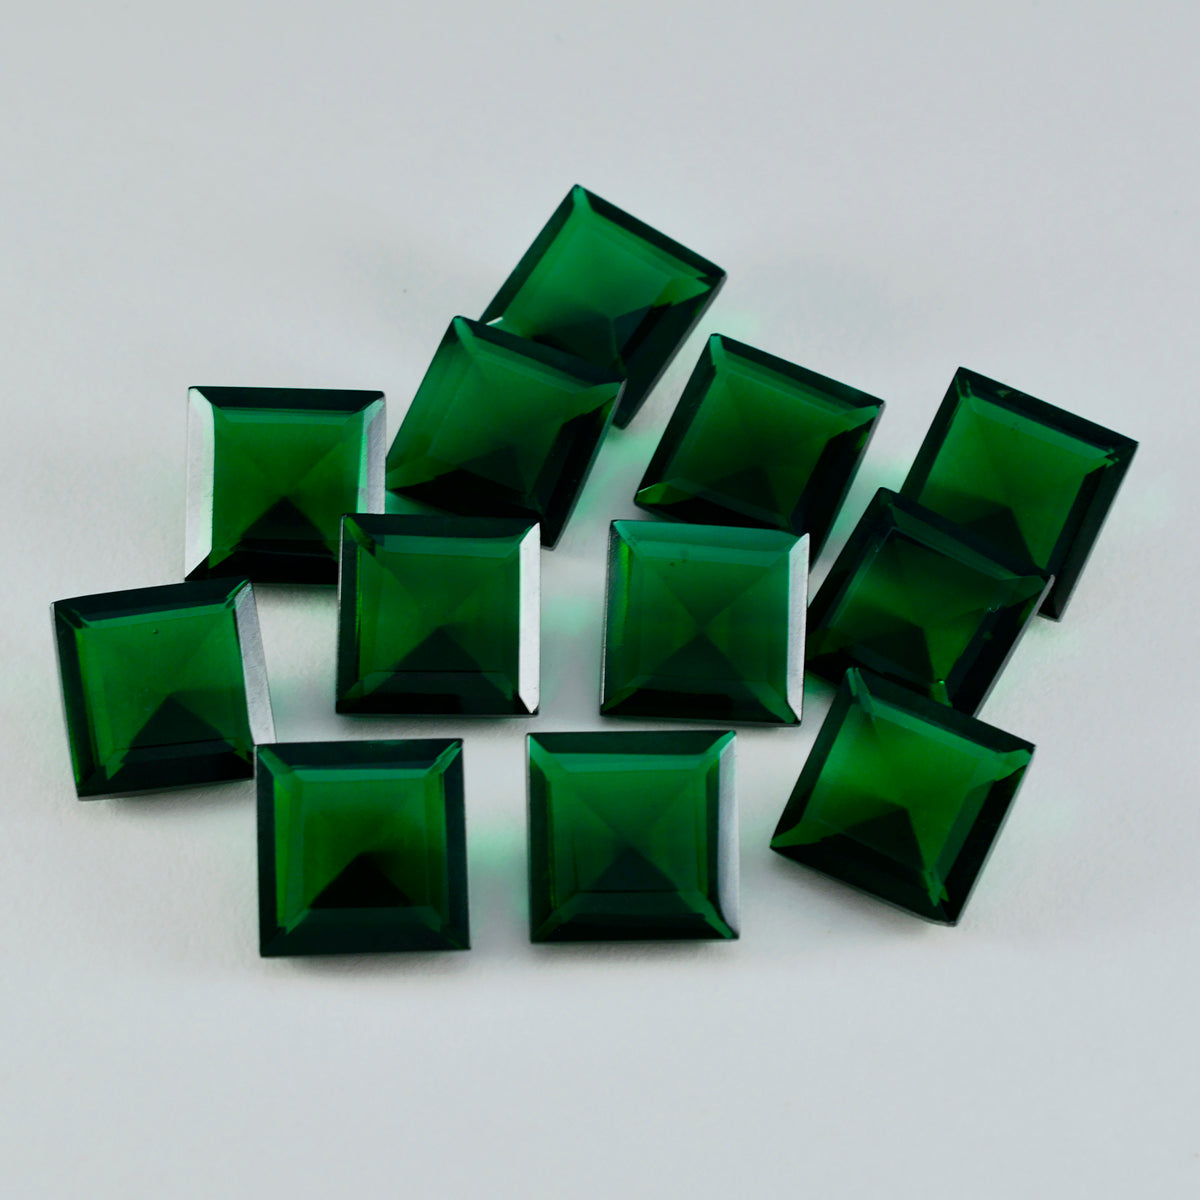 riyogems 1pc グリーン エメラルド CZ ファセット 11x11 mm 正方形の形状のハンサムな品質のルース宝石